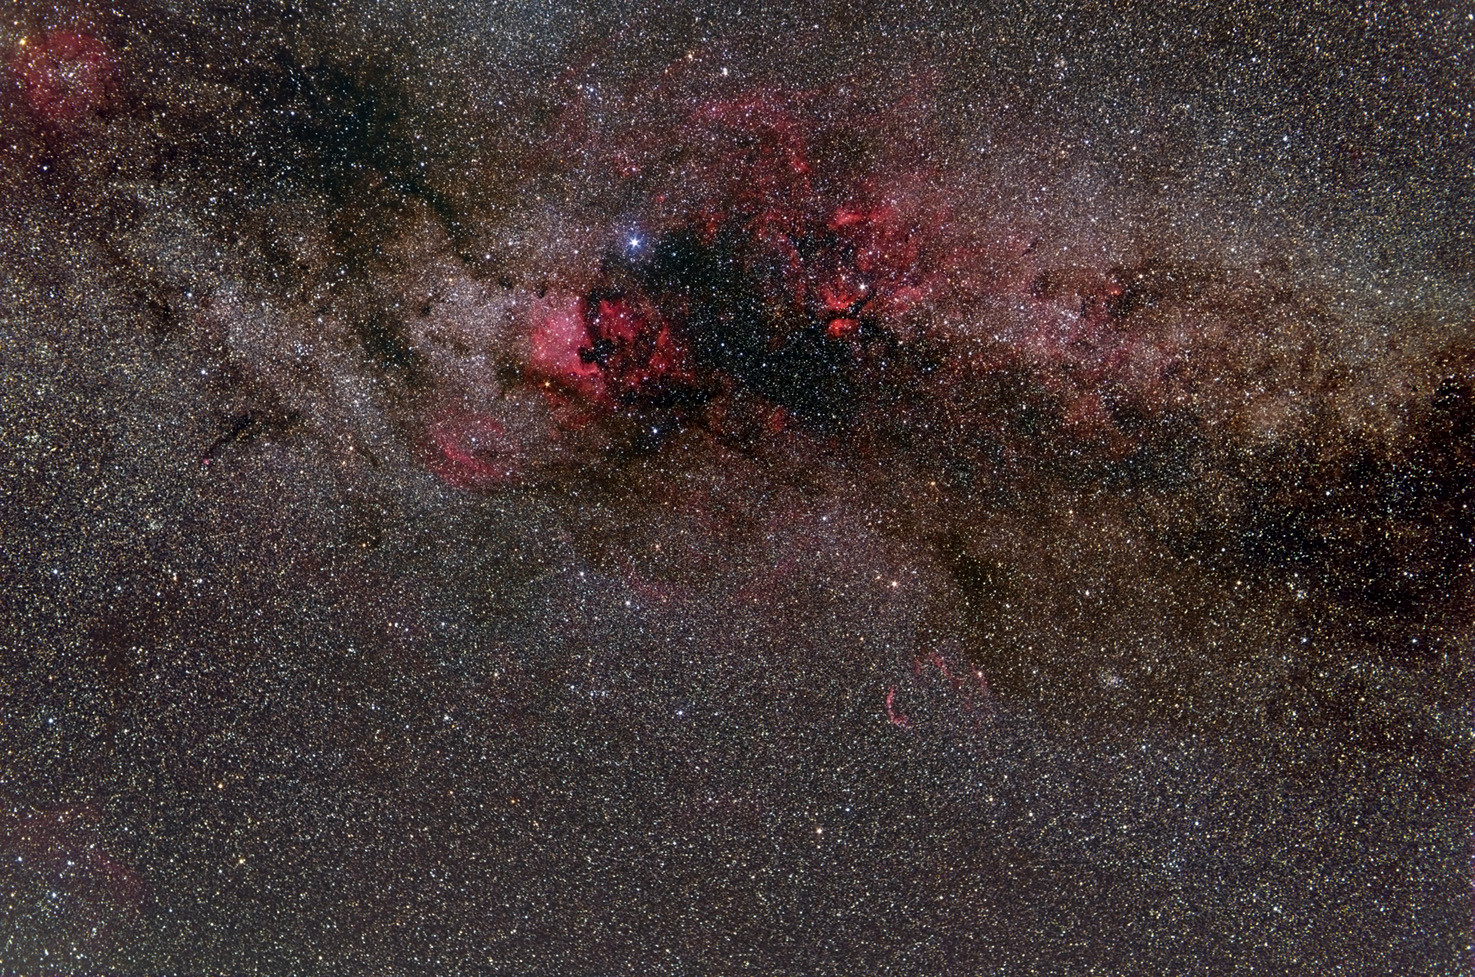 Schwan NGC 7000